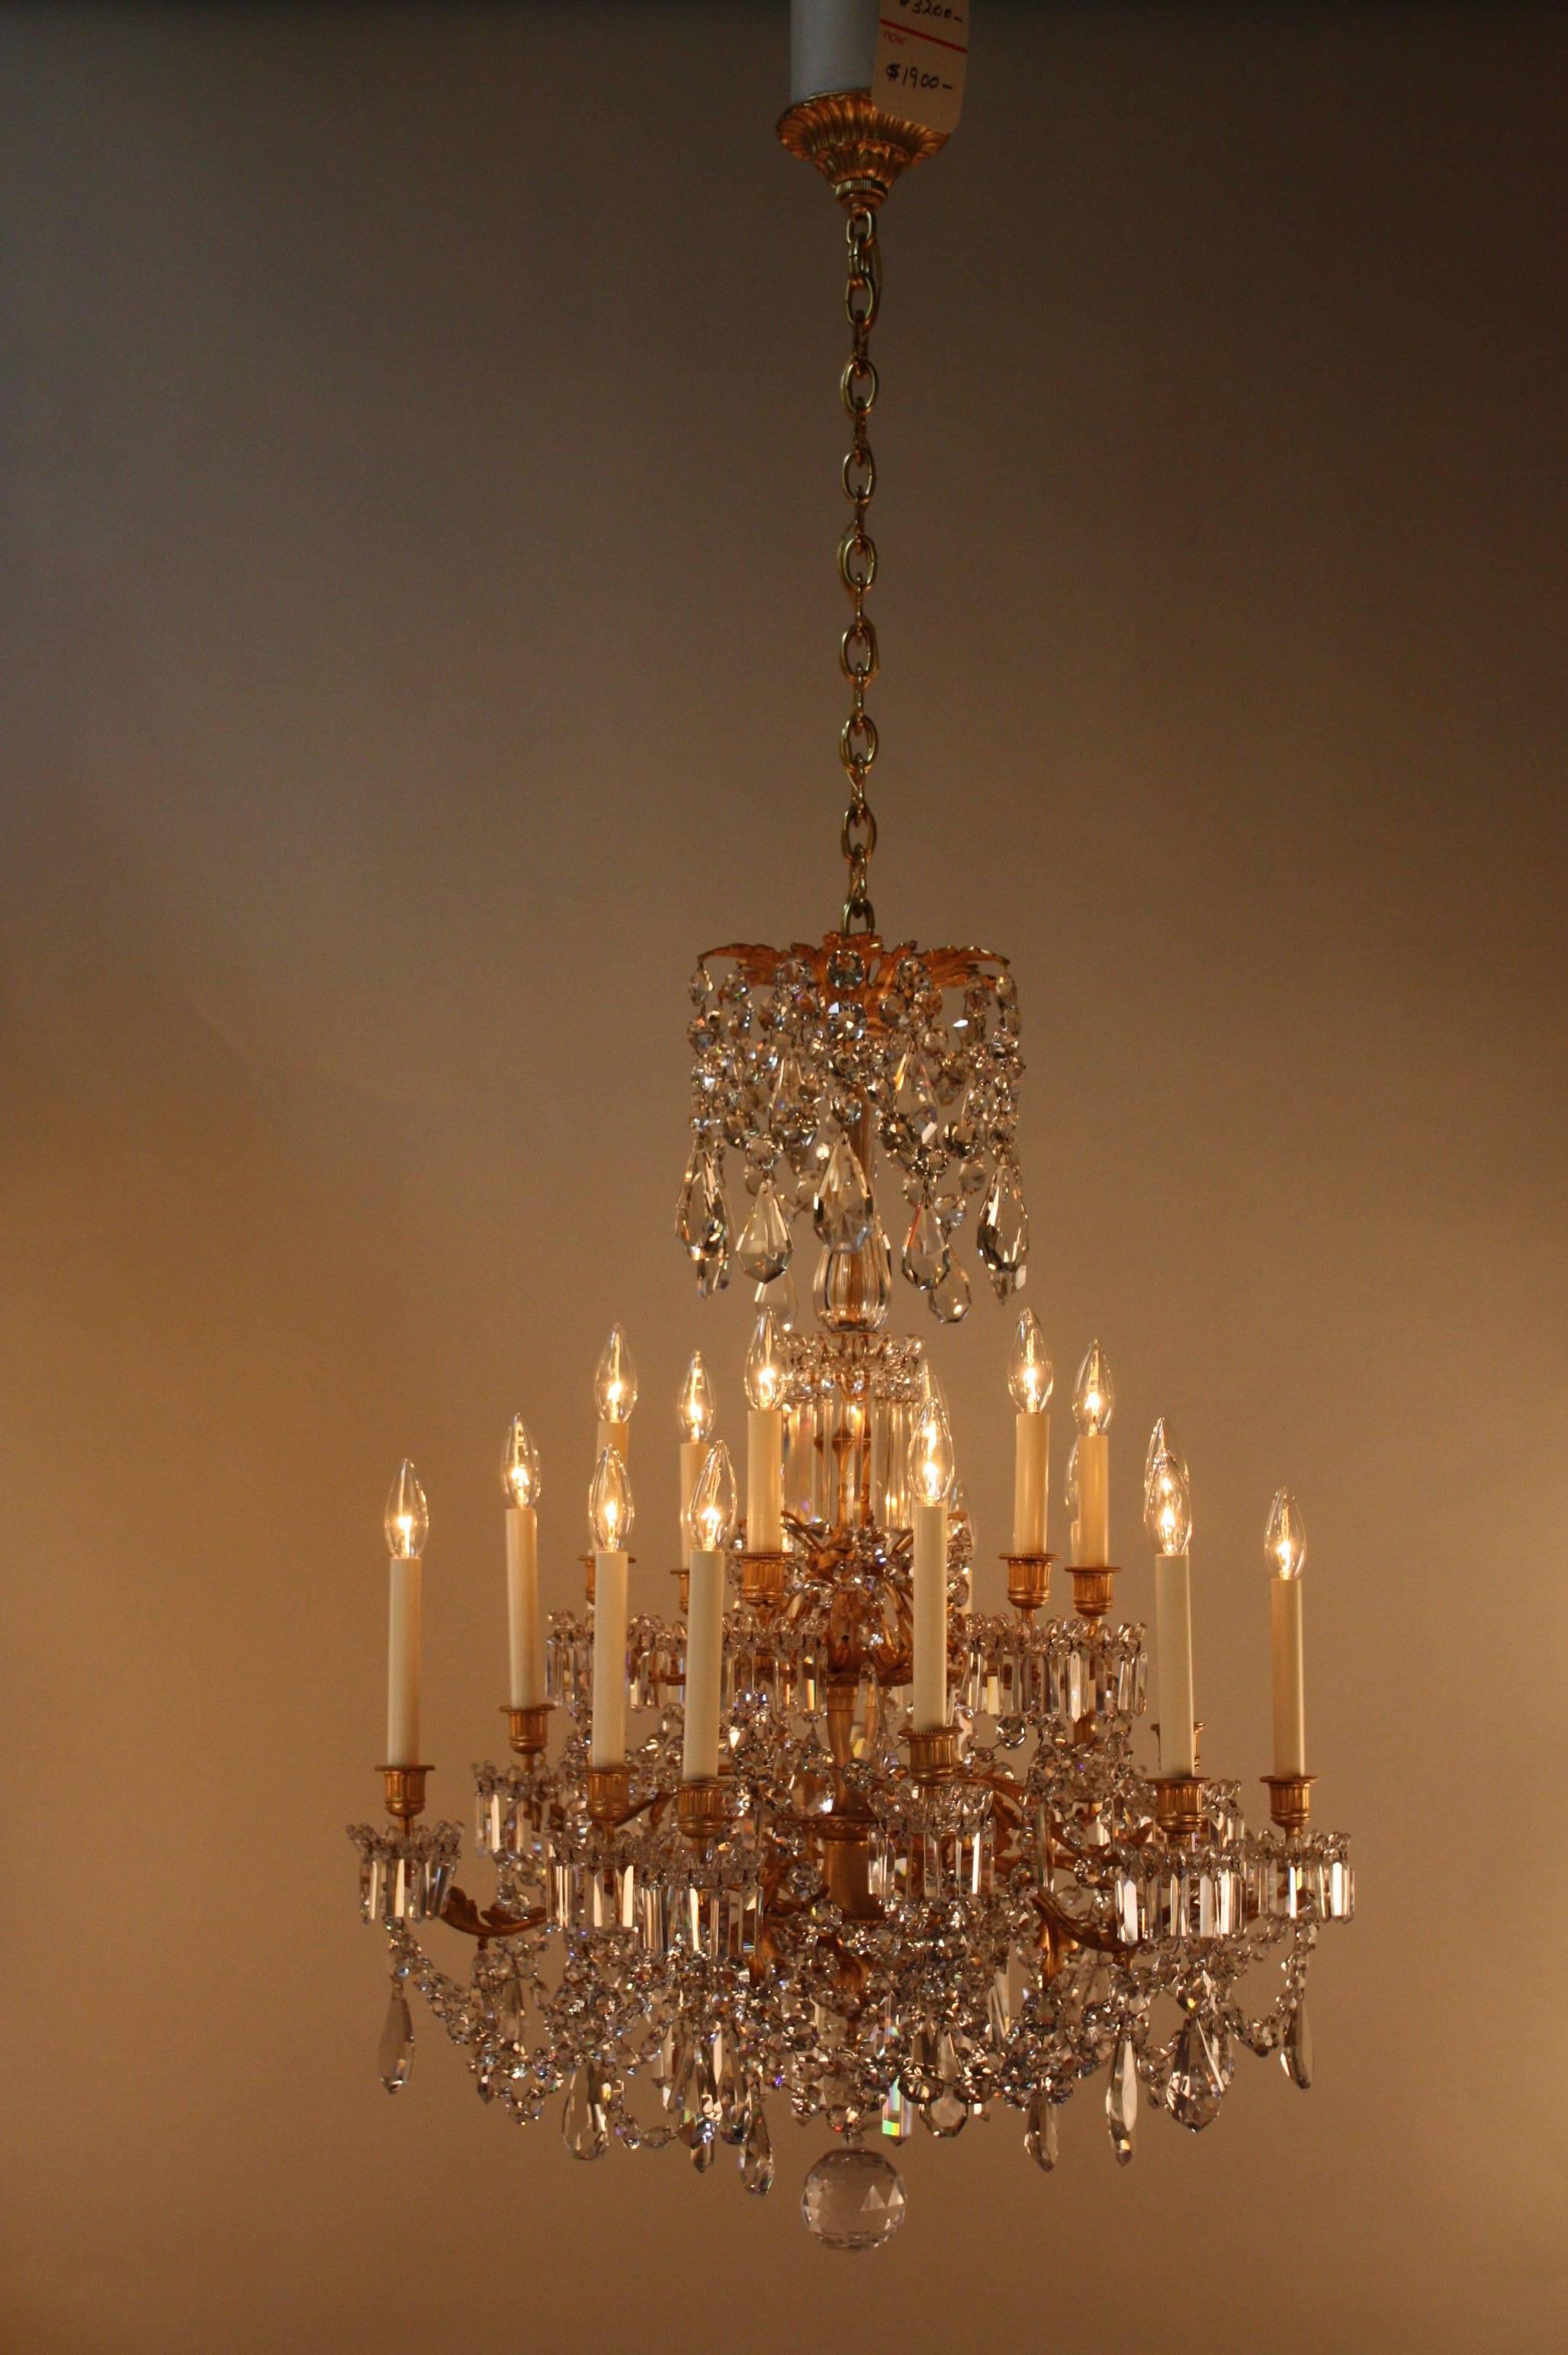 19th century chandelier